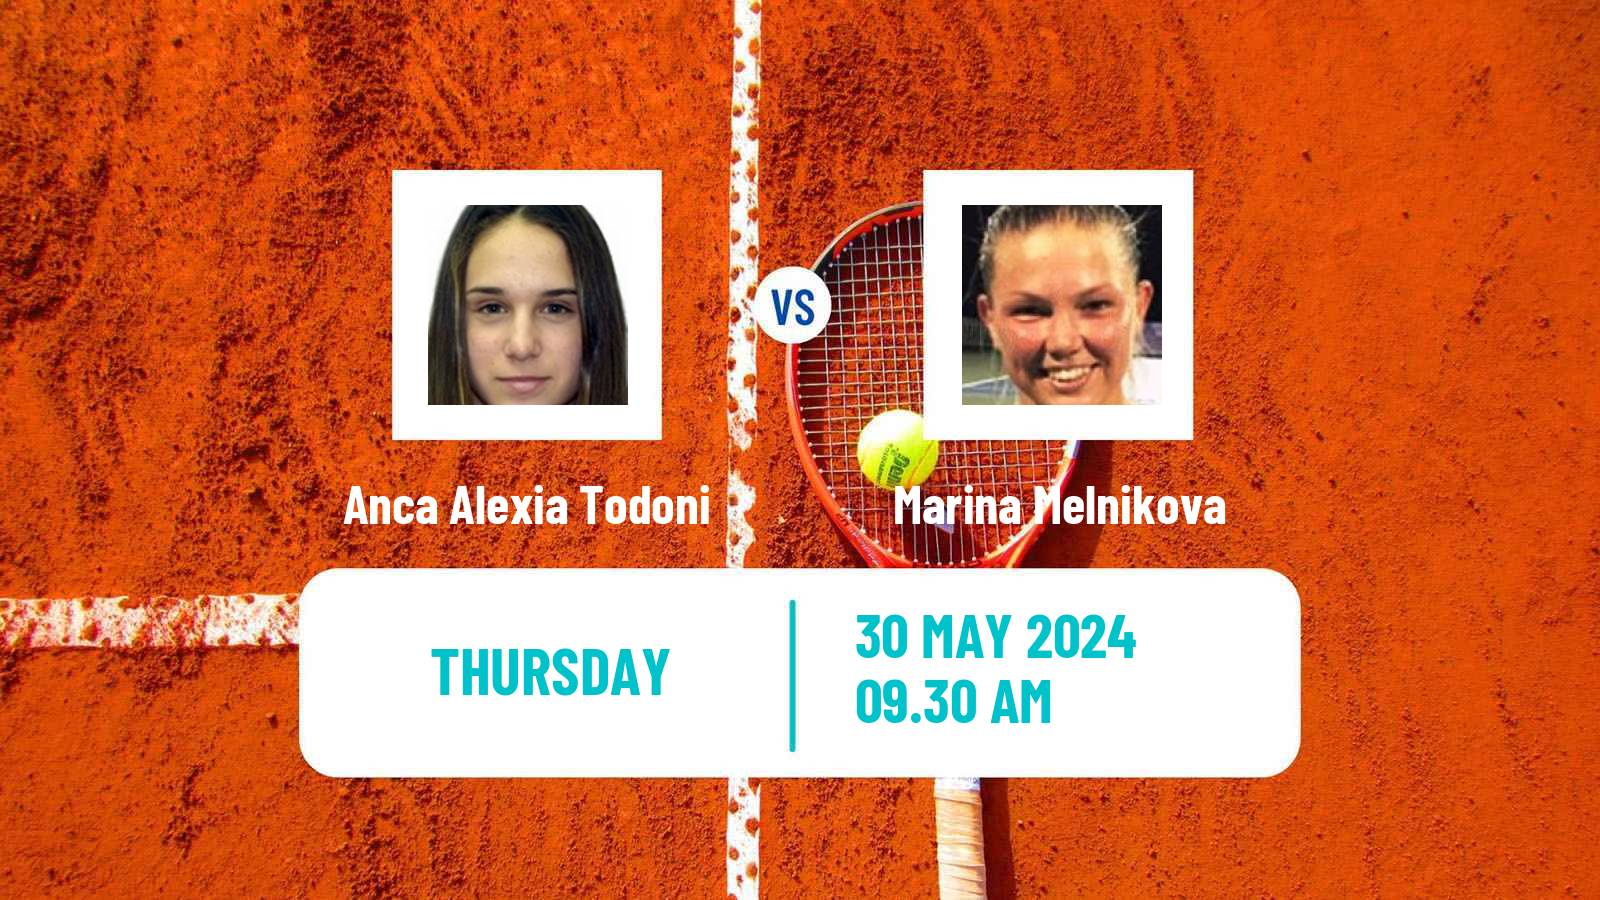 Tennis ITF W50 Troisdorf Women Anca Alexia Todoni - Marina Melnikova